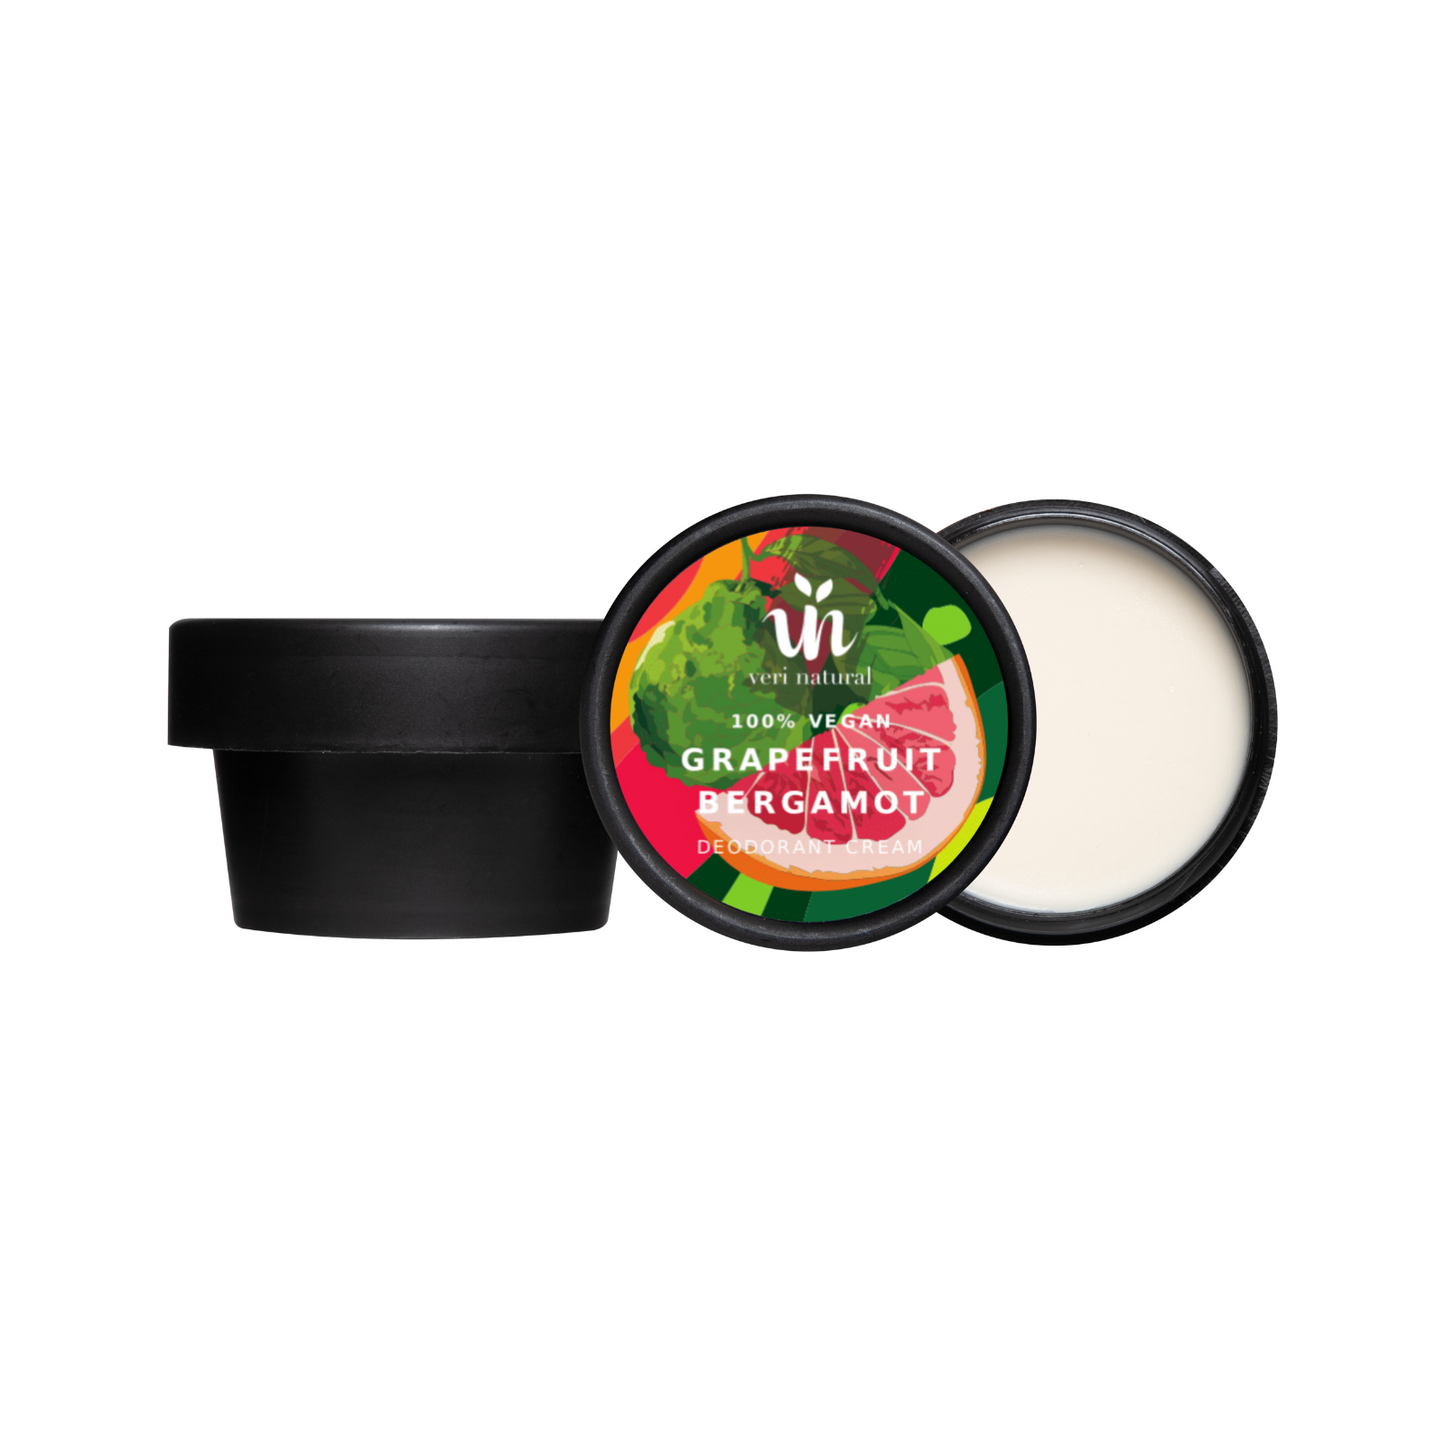 Grapefruit Bergamot Deodorant Cream